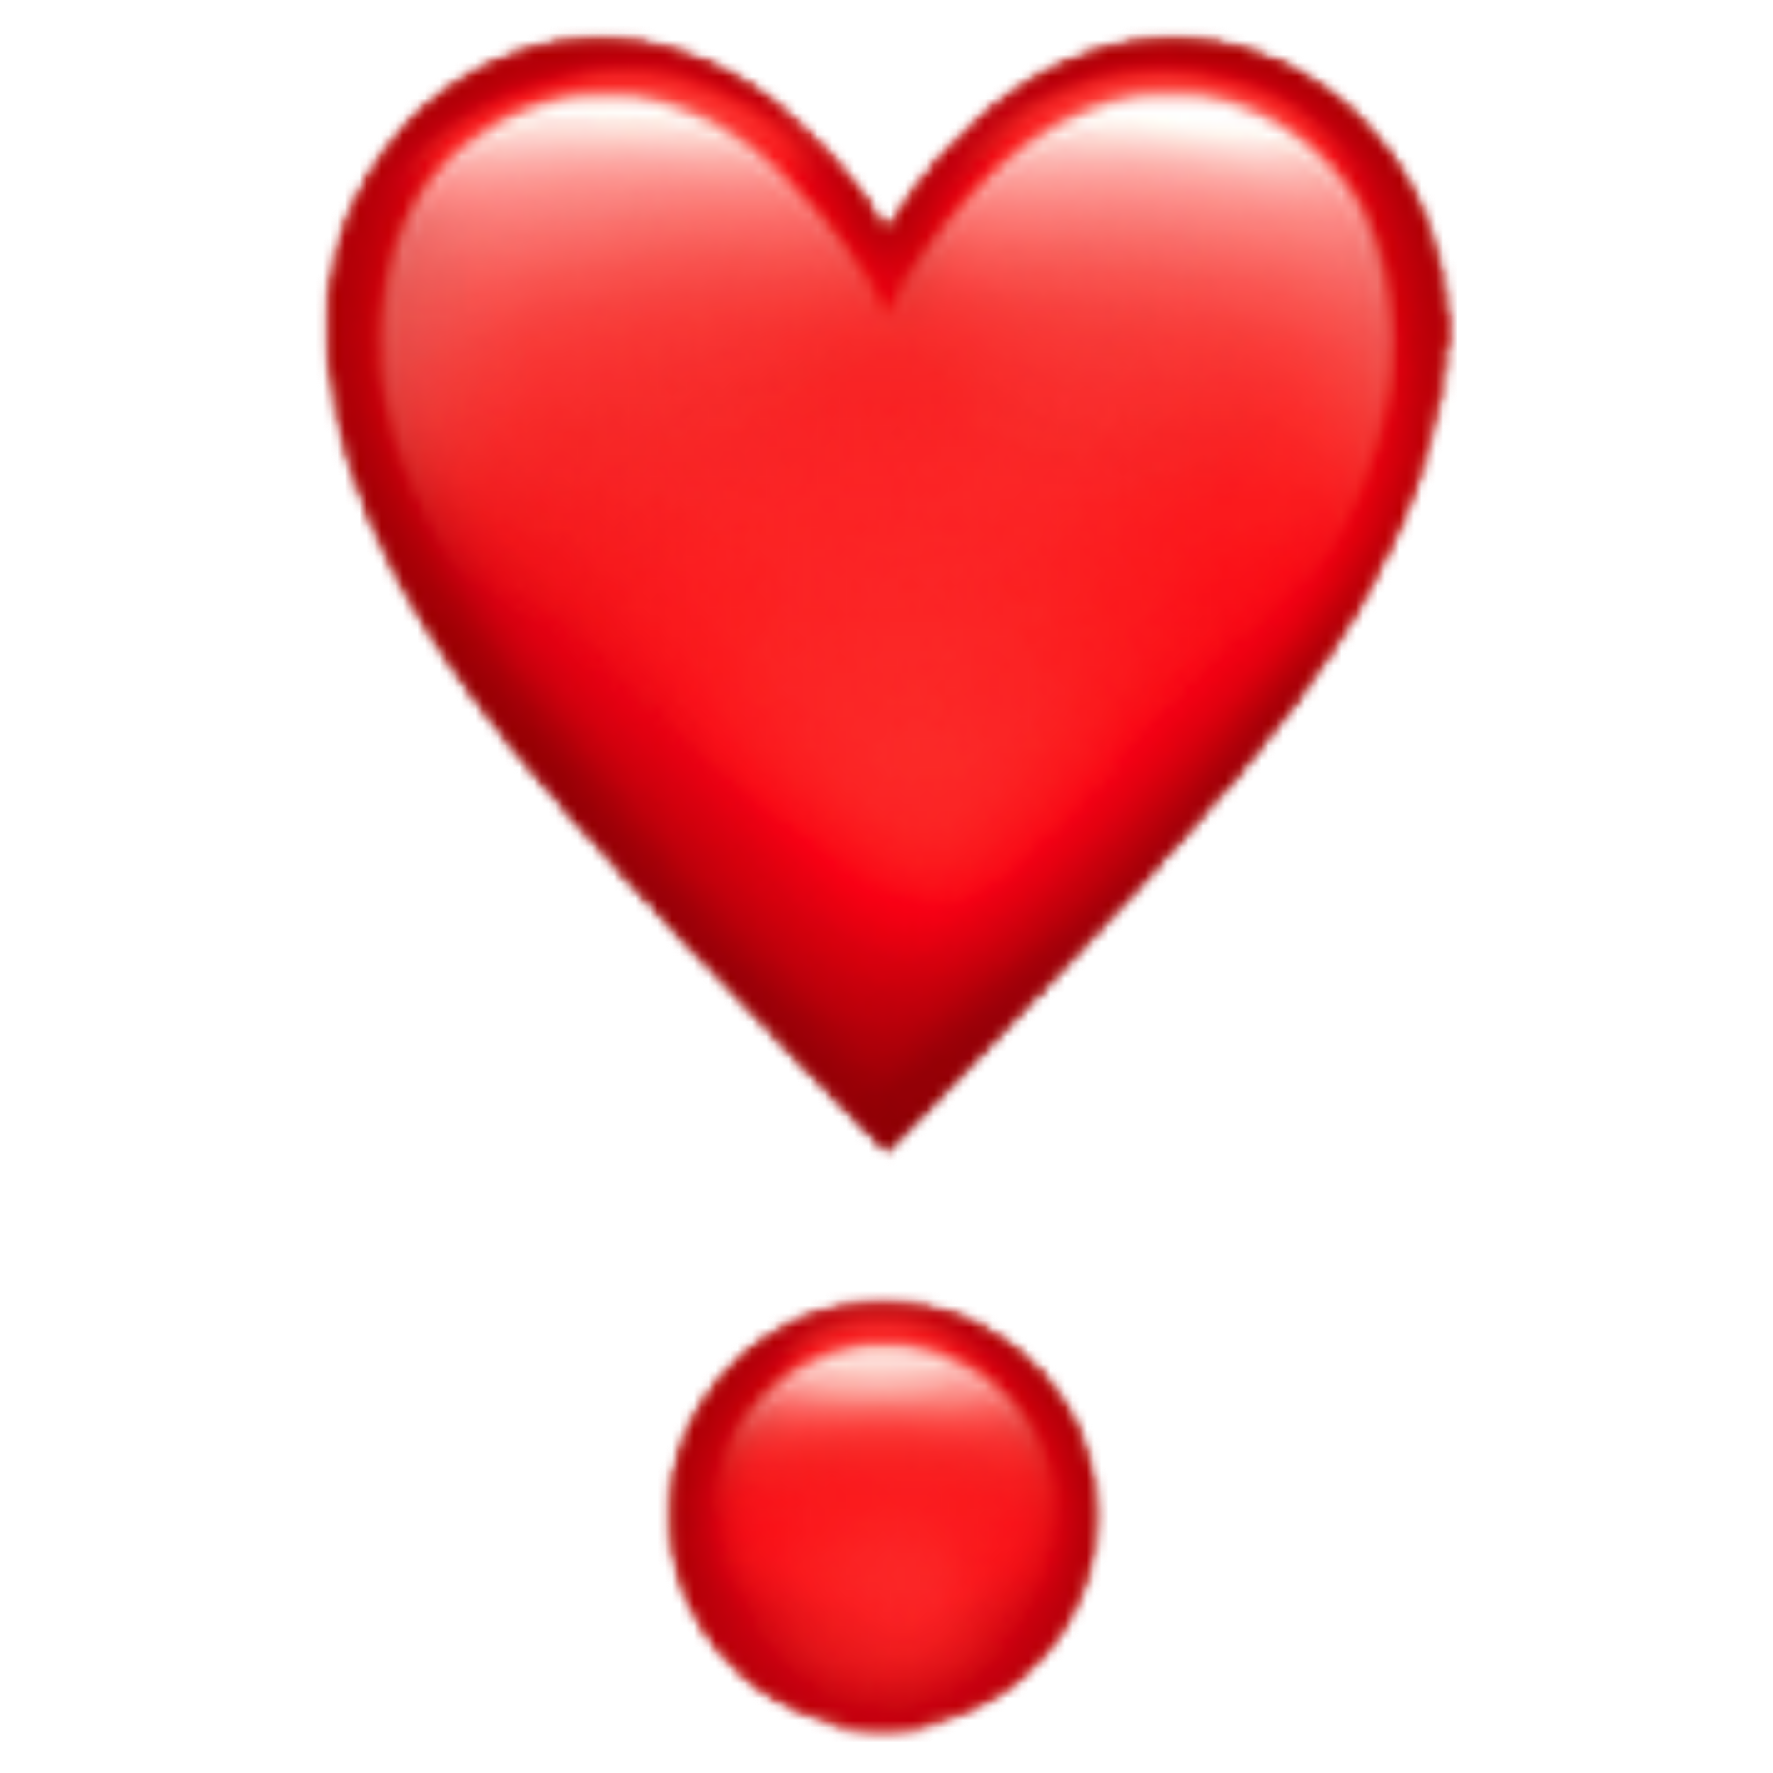 Как сделать анимированные сердечко из сердечек в телеграмме фото 82